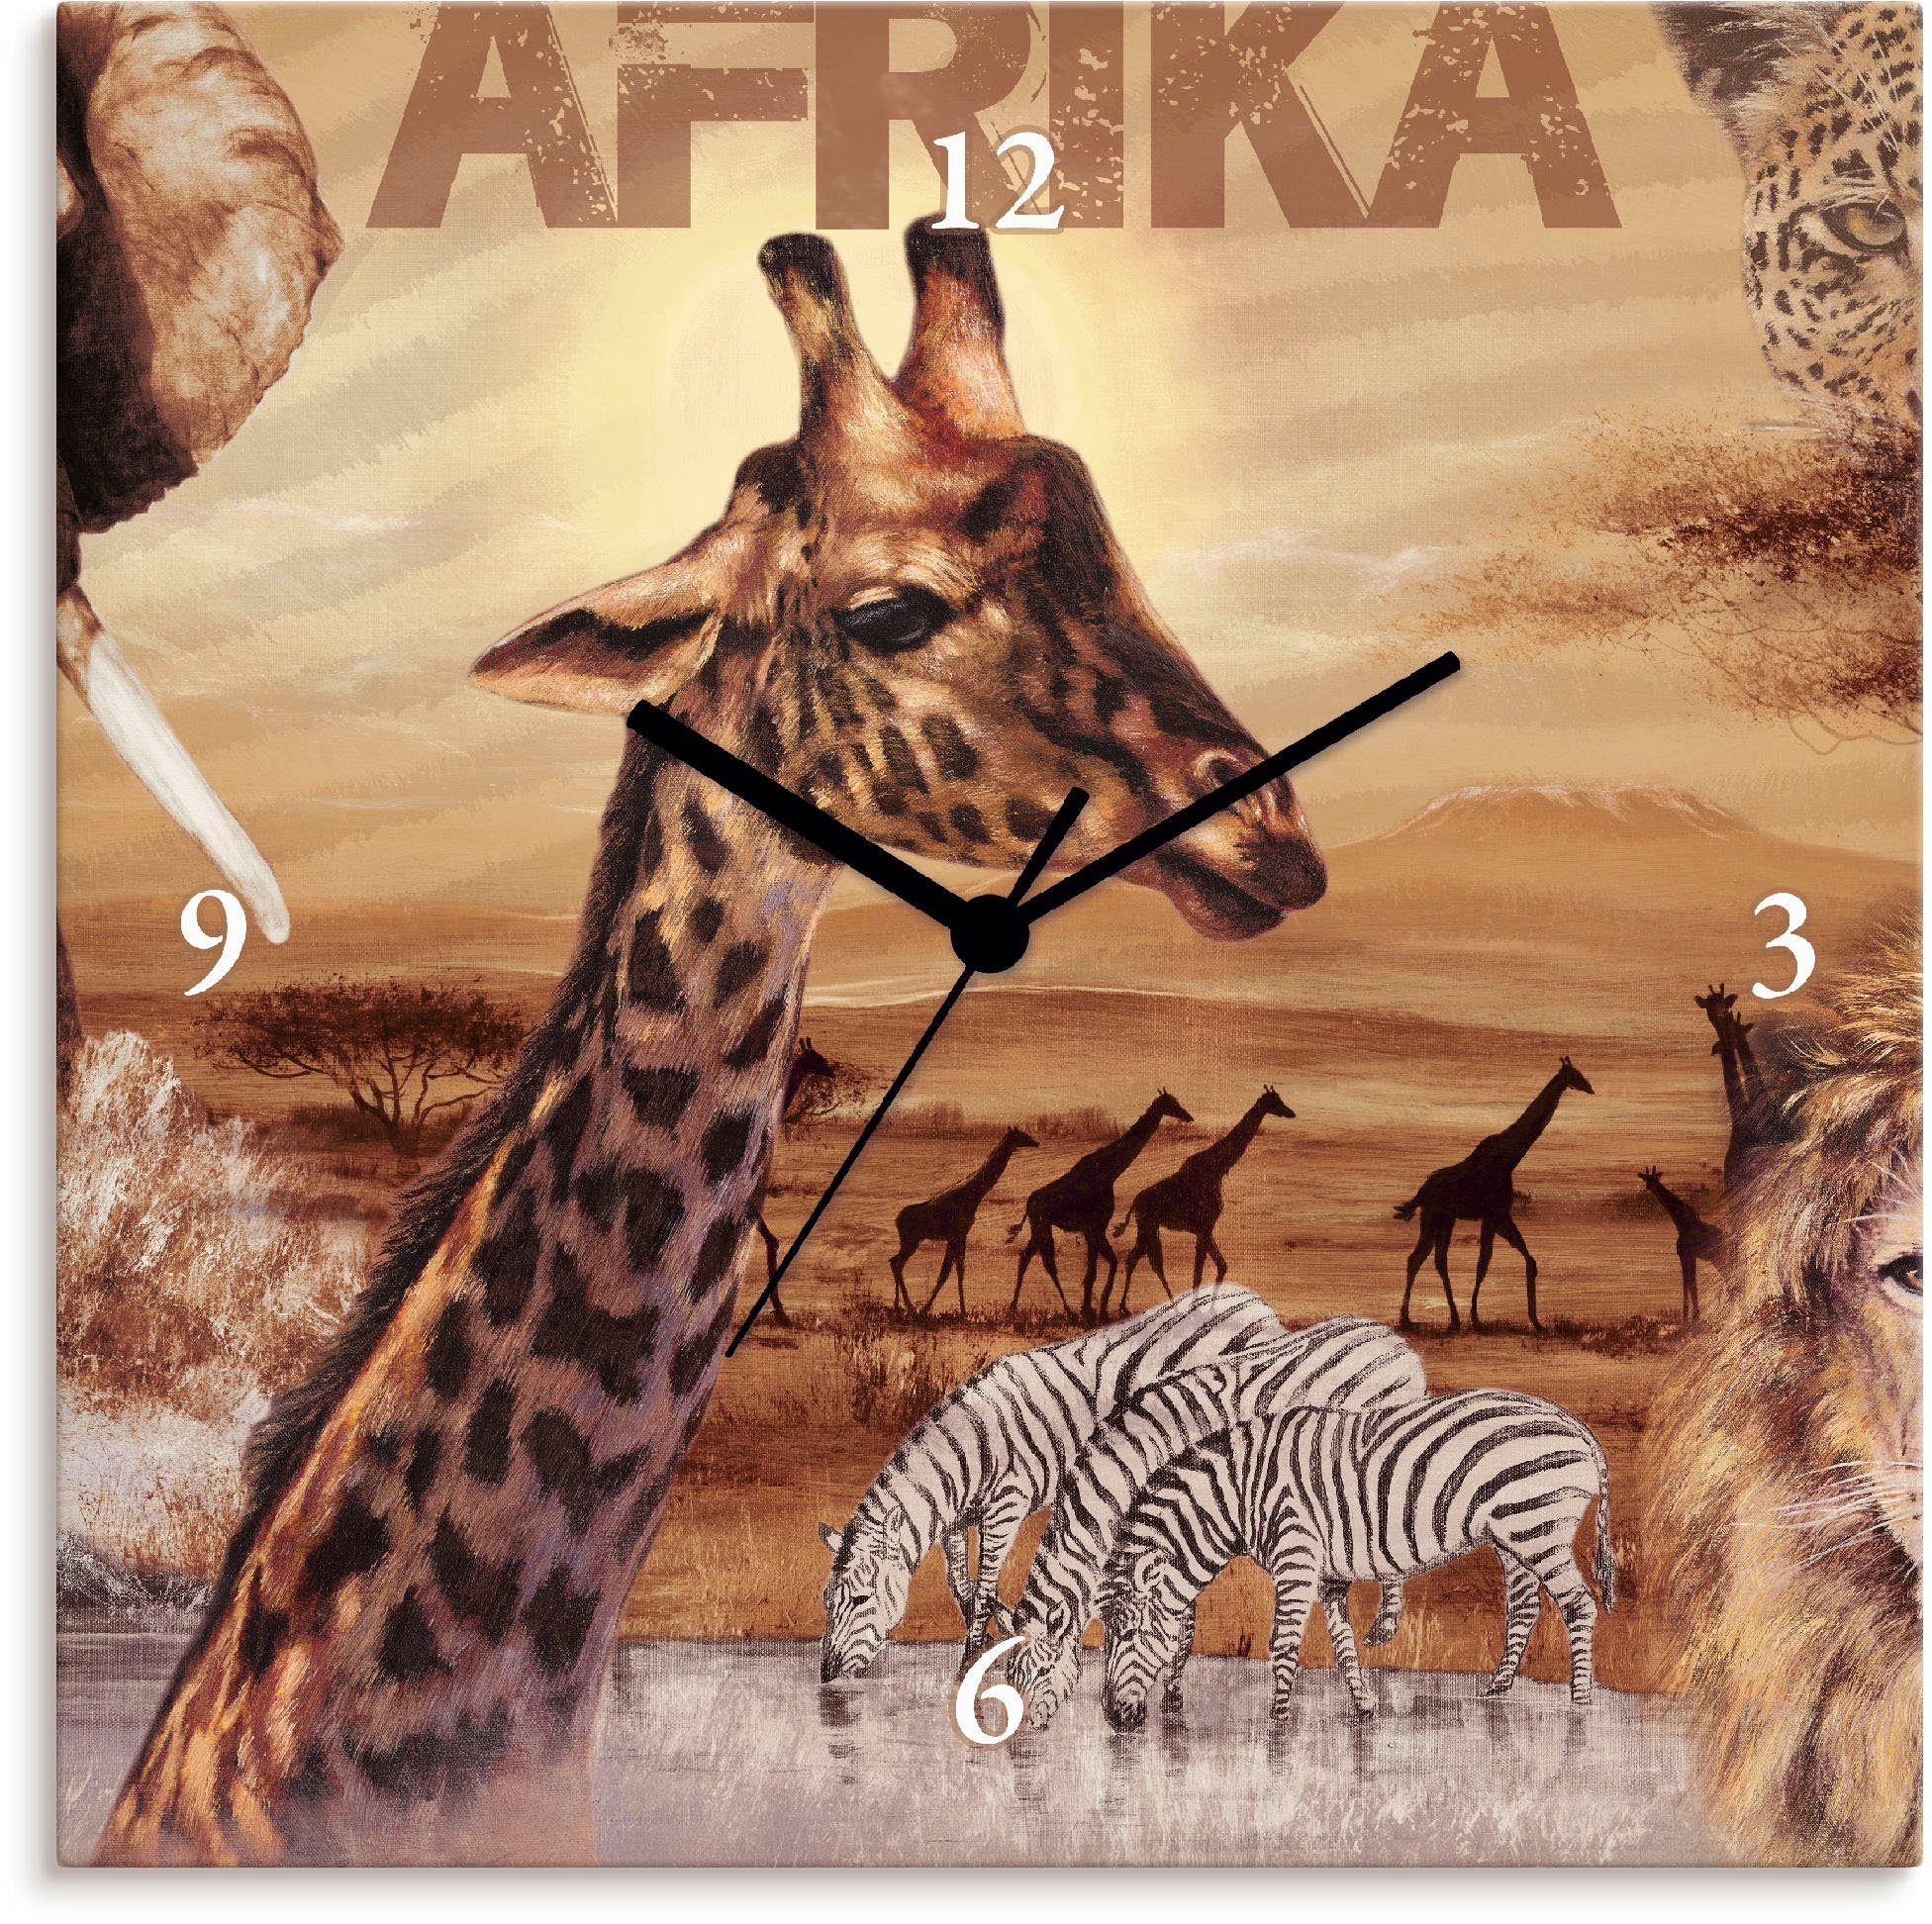 Artland Wanduhr Afrika (wahlweise mit Quarz- oder Funkuhrwerk, lautlos ohne Tickgeräusche)